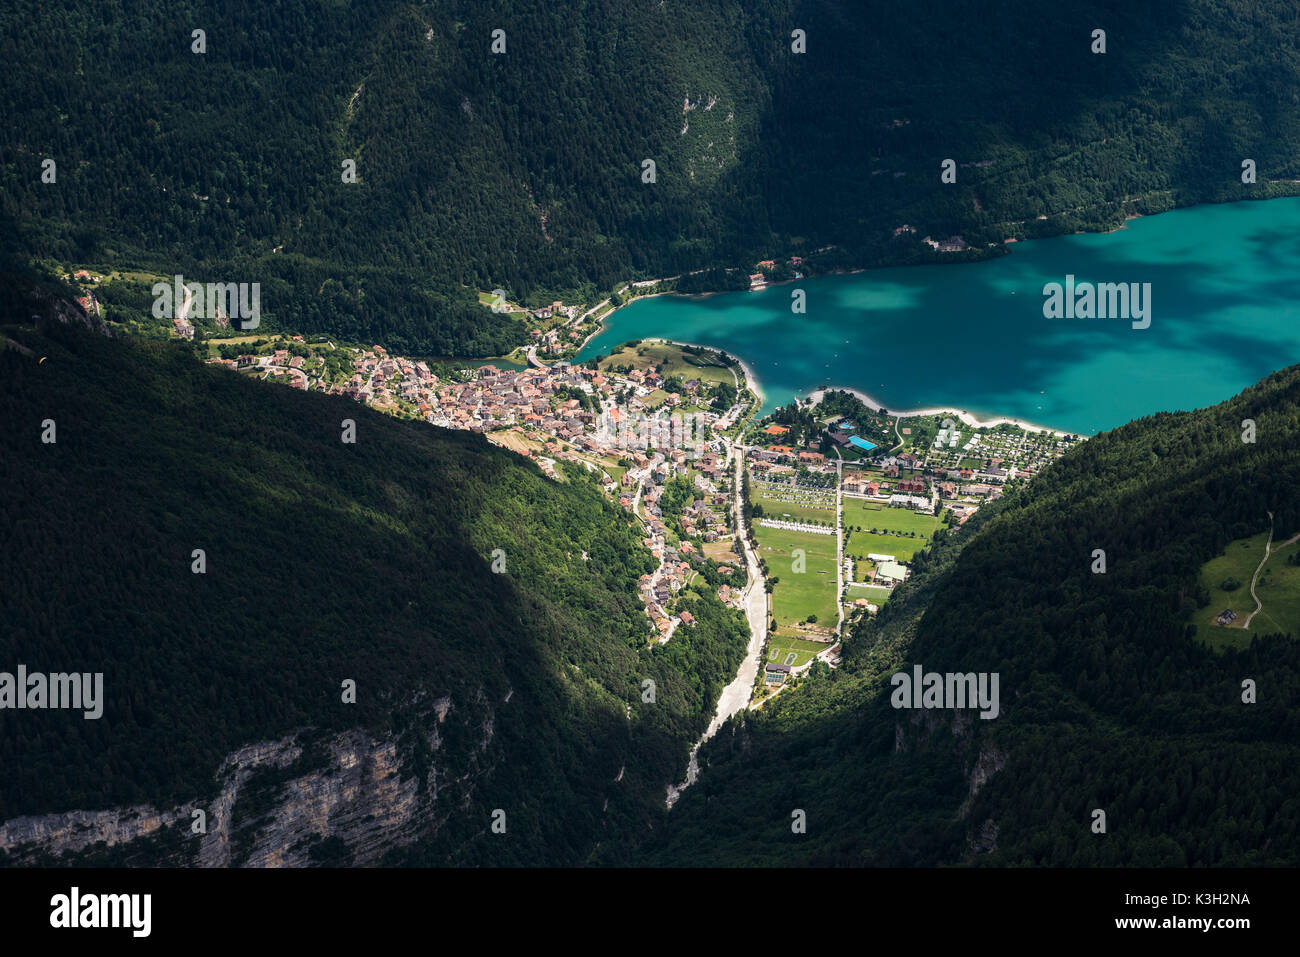 Molvenersee fermer Molveno, baignoire shore, le camping au bord du lac de montagne, bois, photo aérienne, Trentin, Italie Banque D'Images